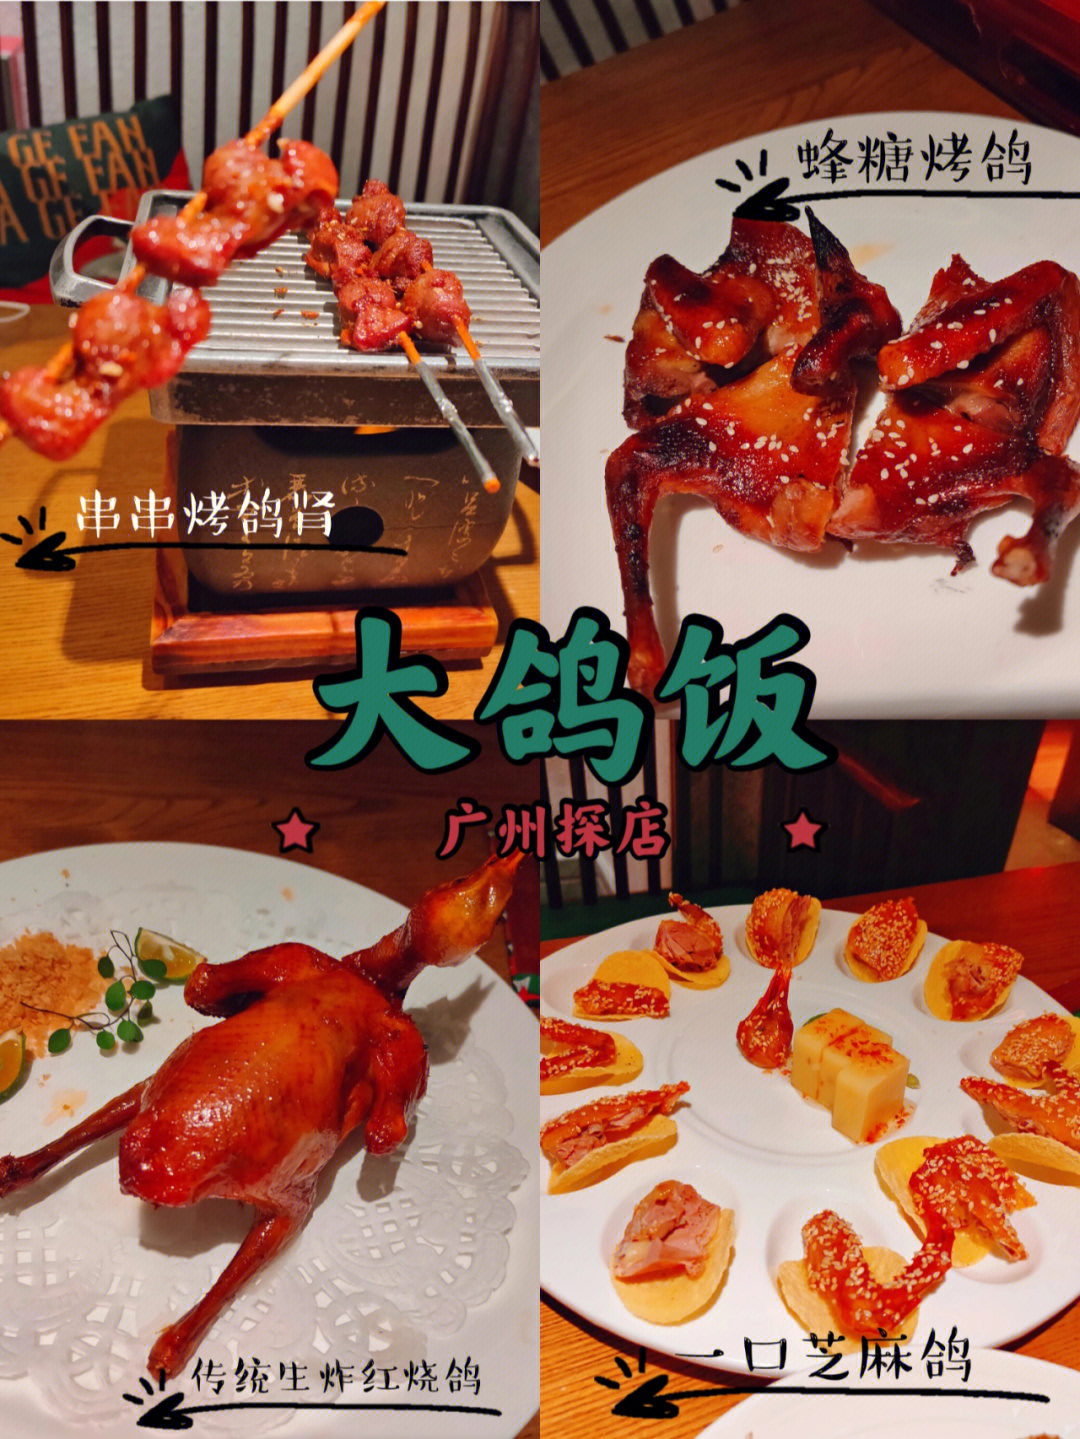 广州必吃榜大鸽饭广州美食最入味的乳鸽